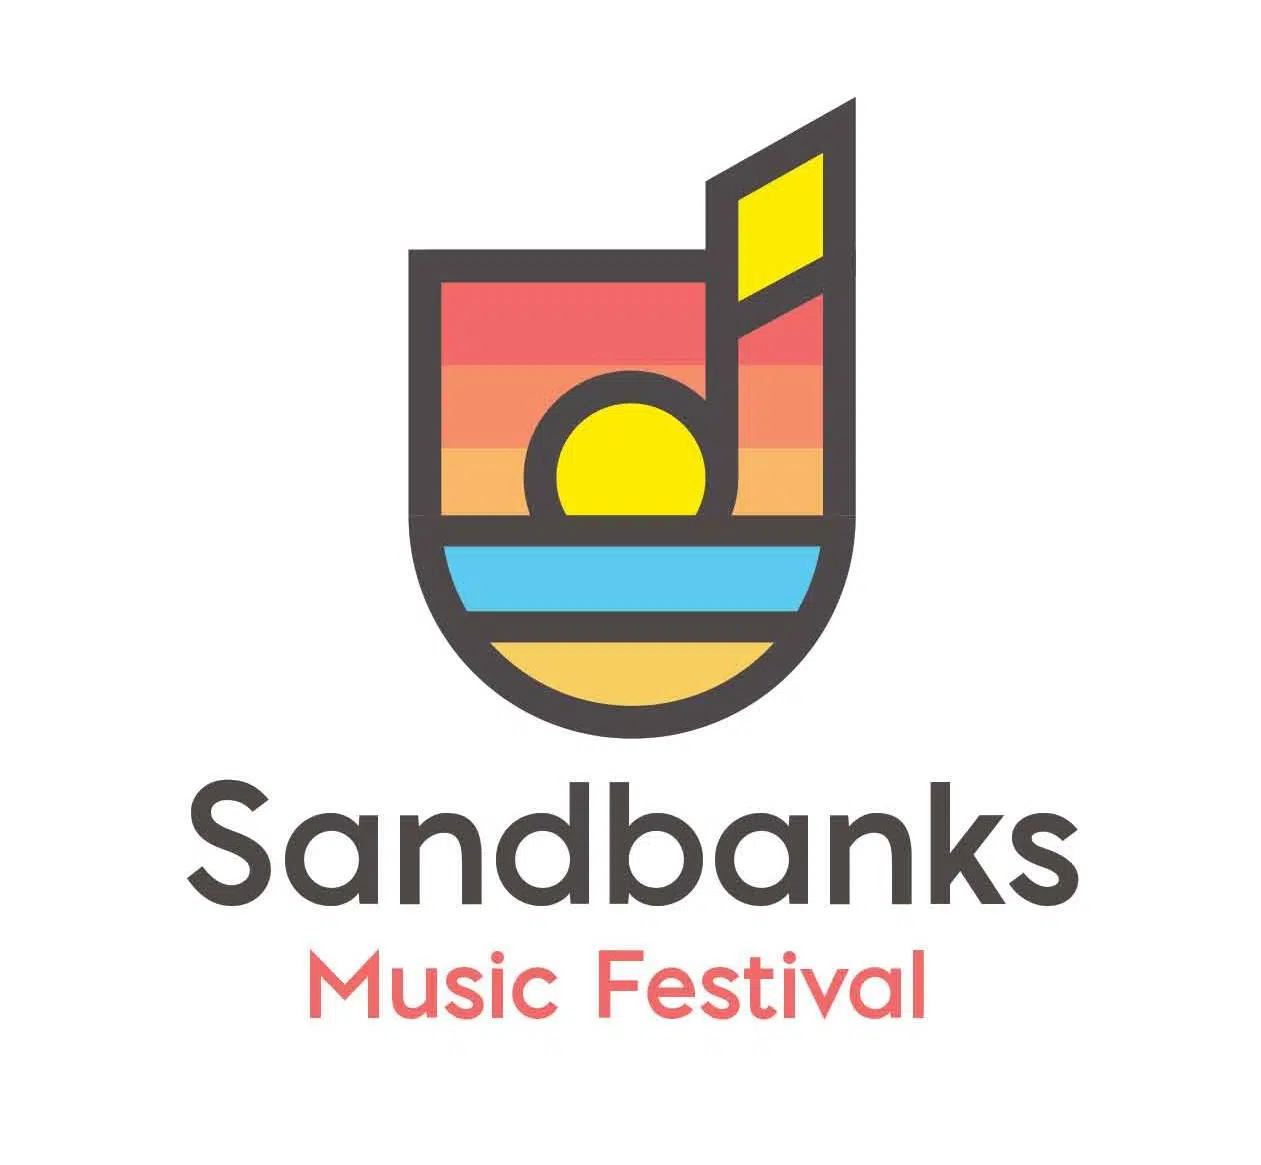 Sandbanks Music Festival going virtual September 19